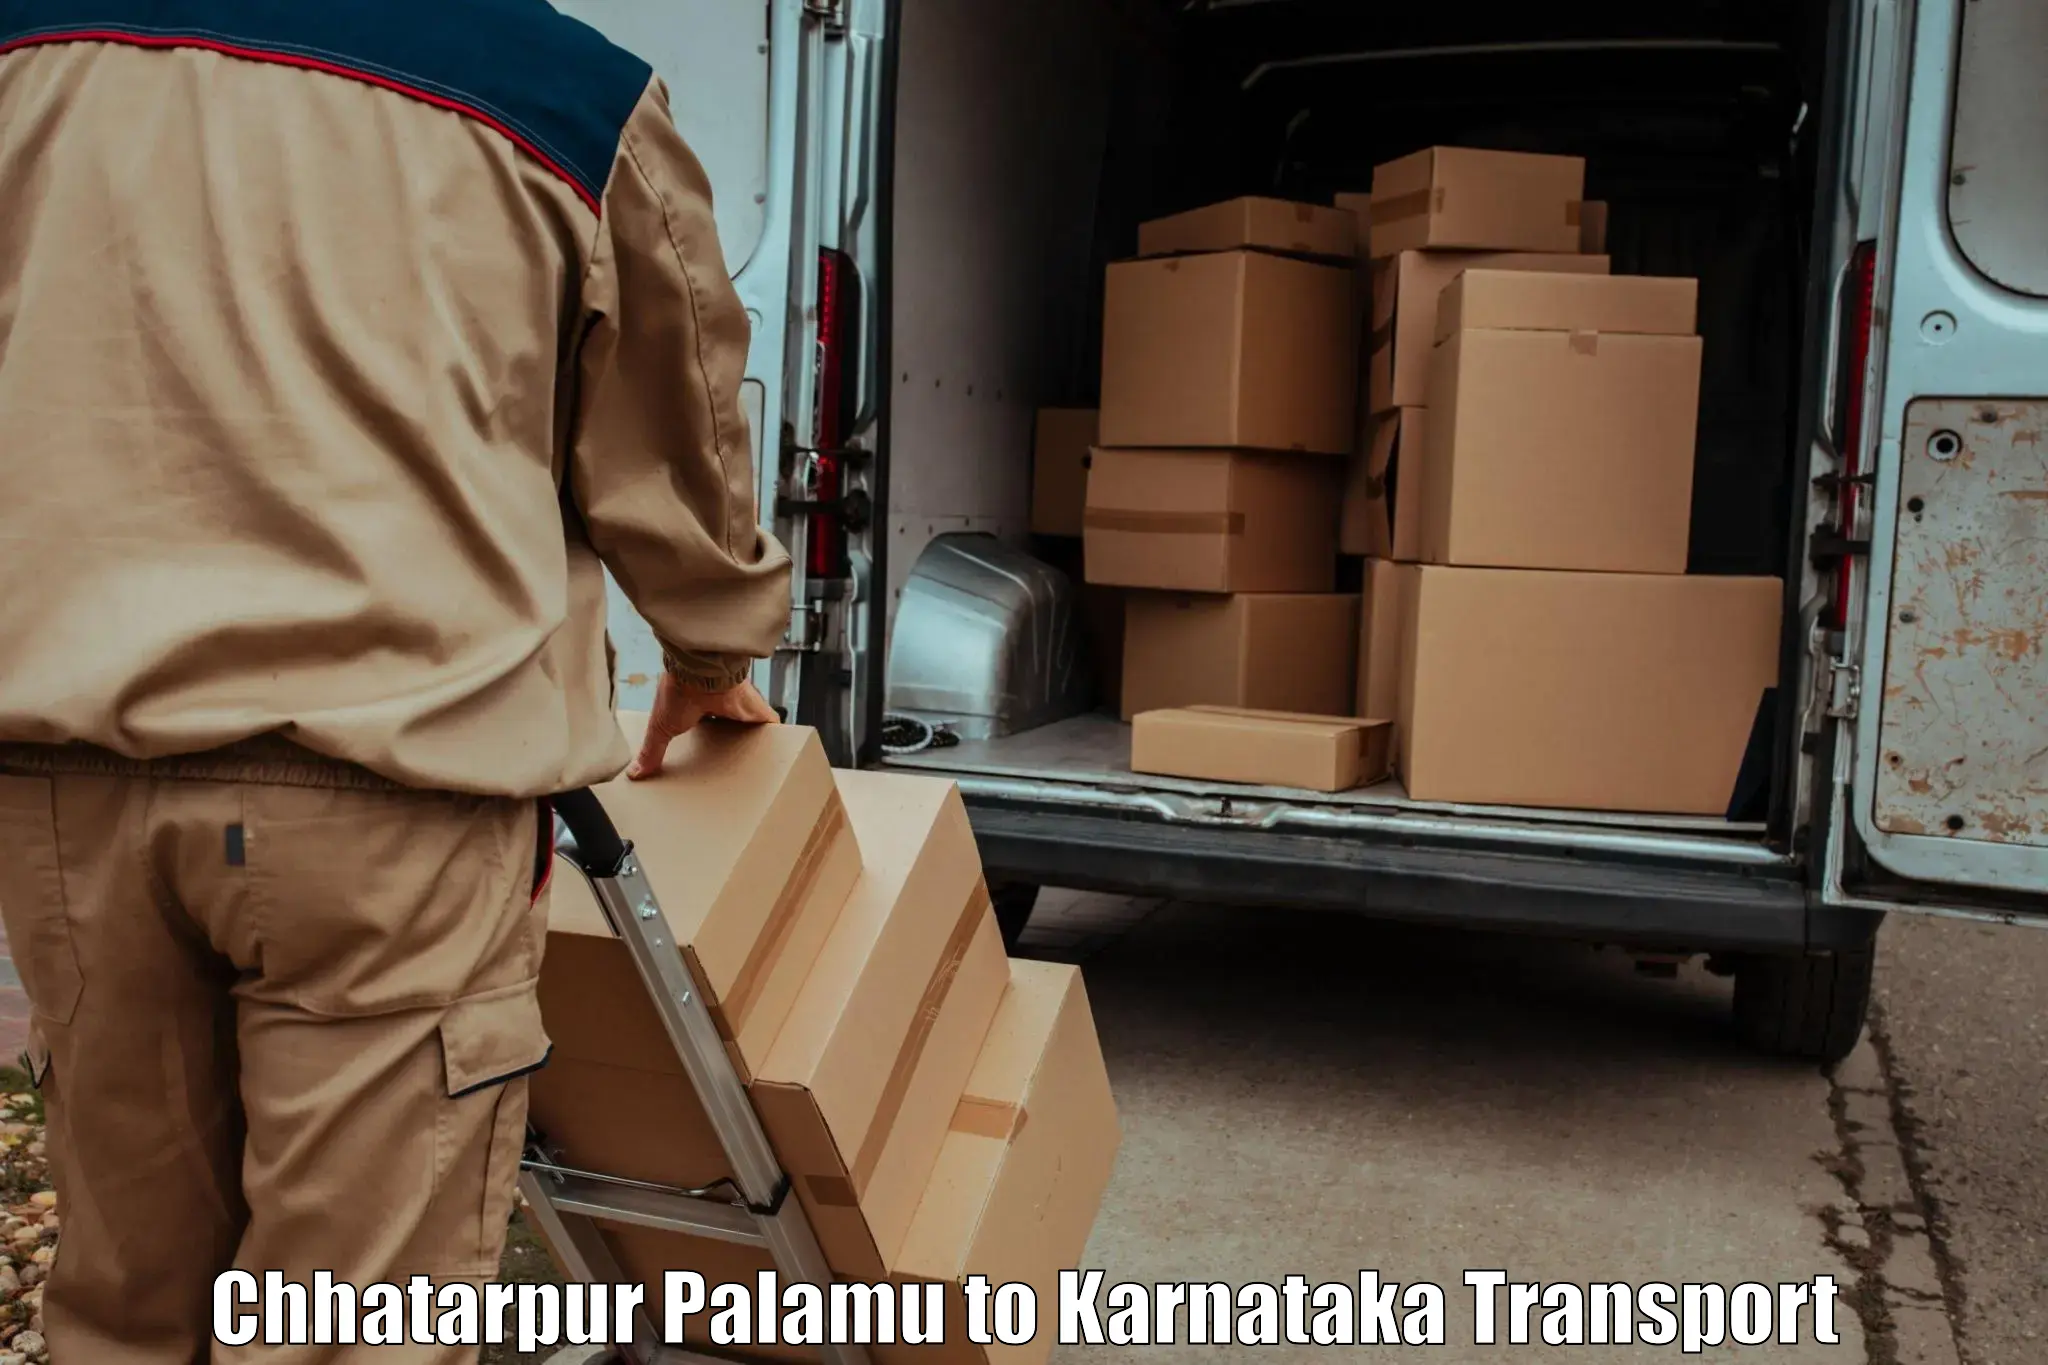 Online transport booking Chhatarpur Palamu to Channarayapatna